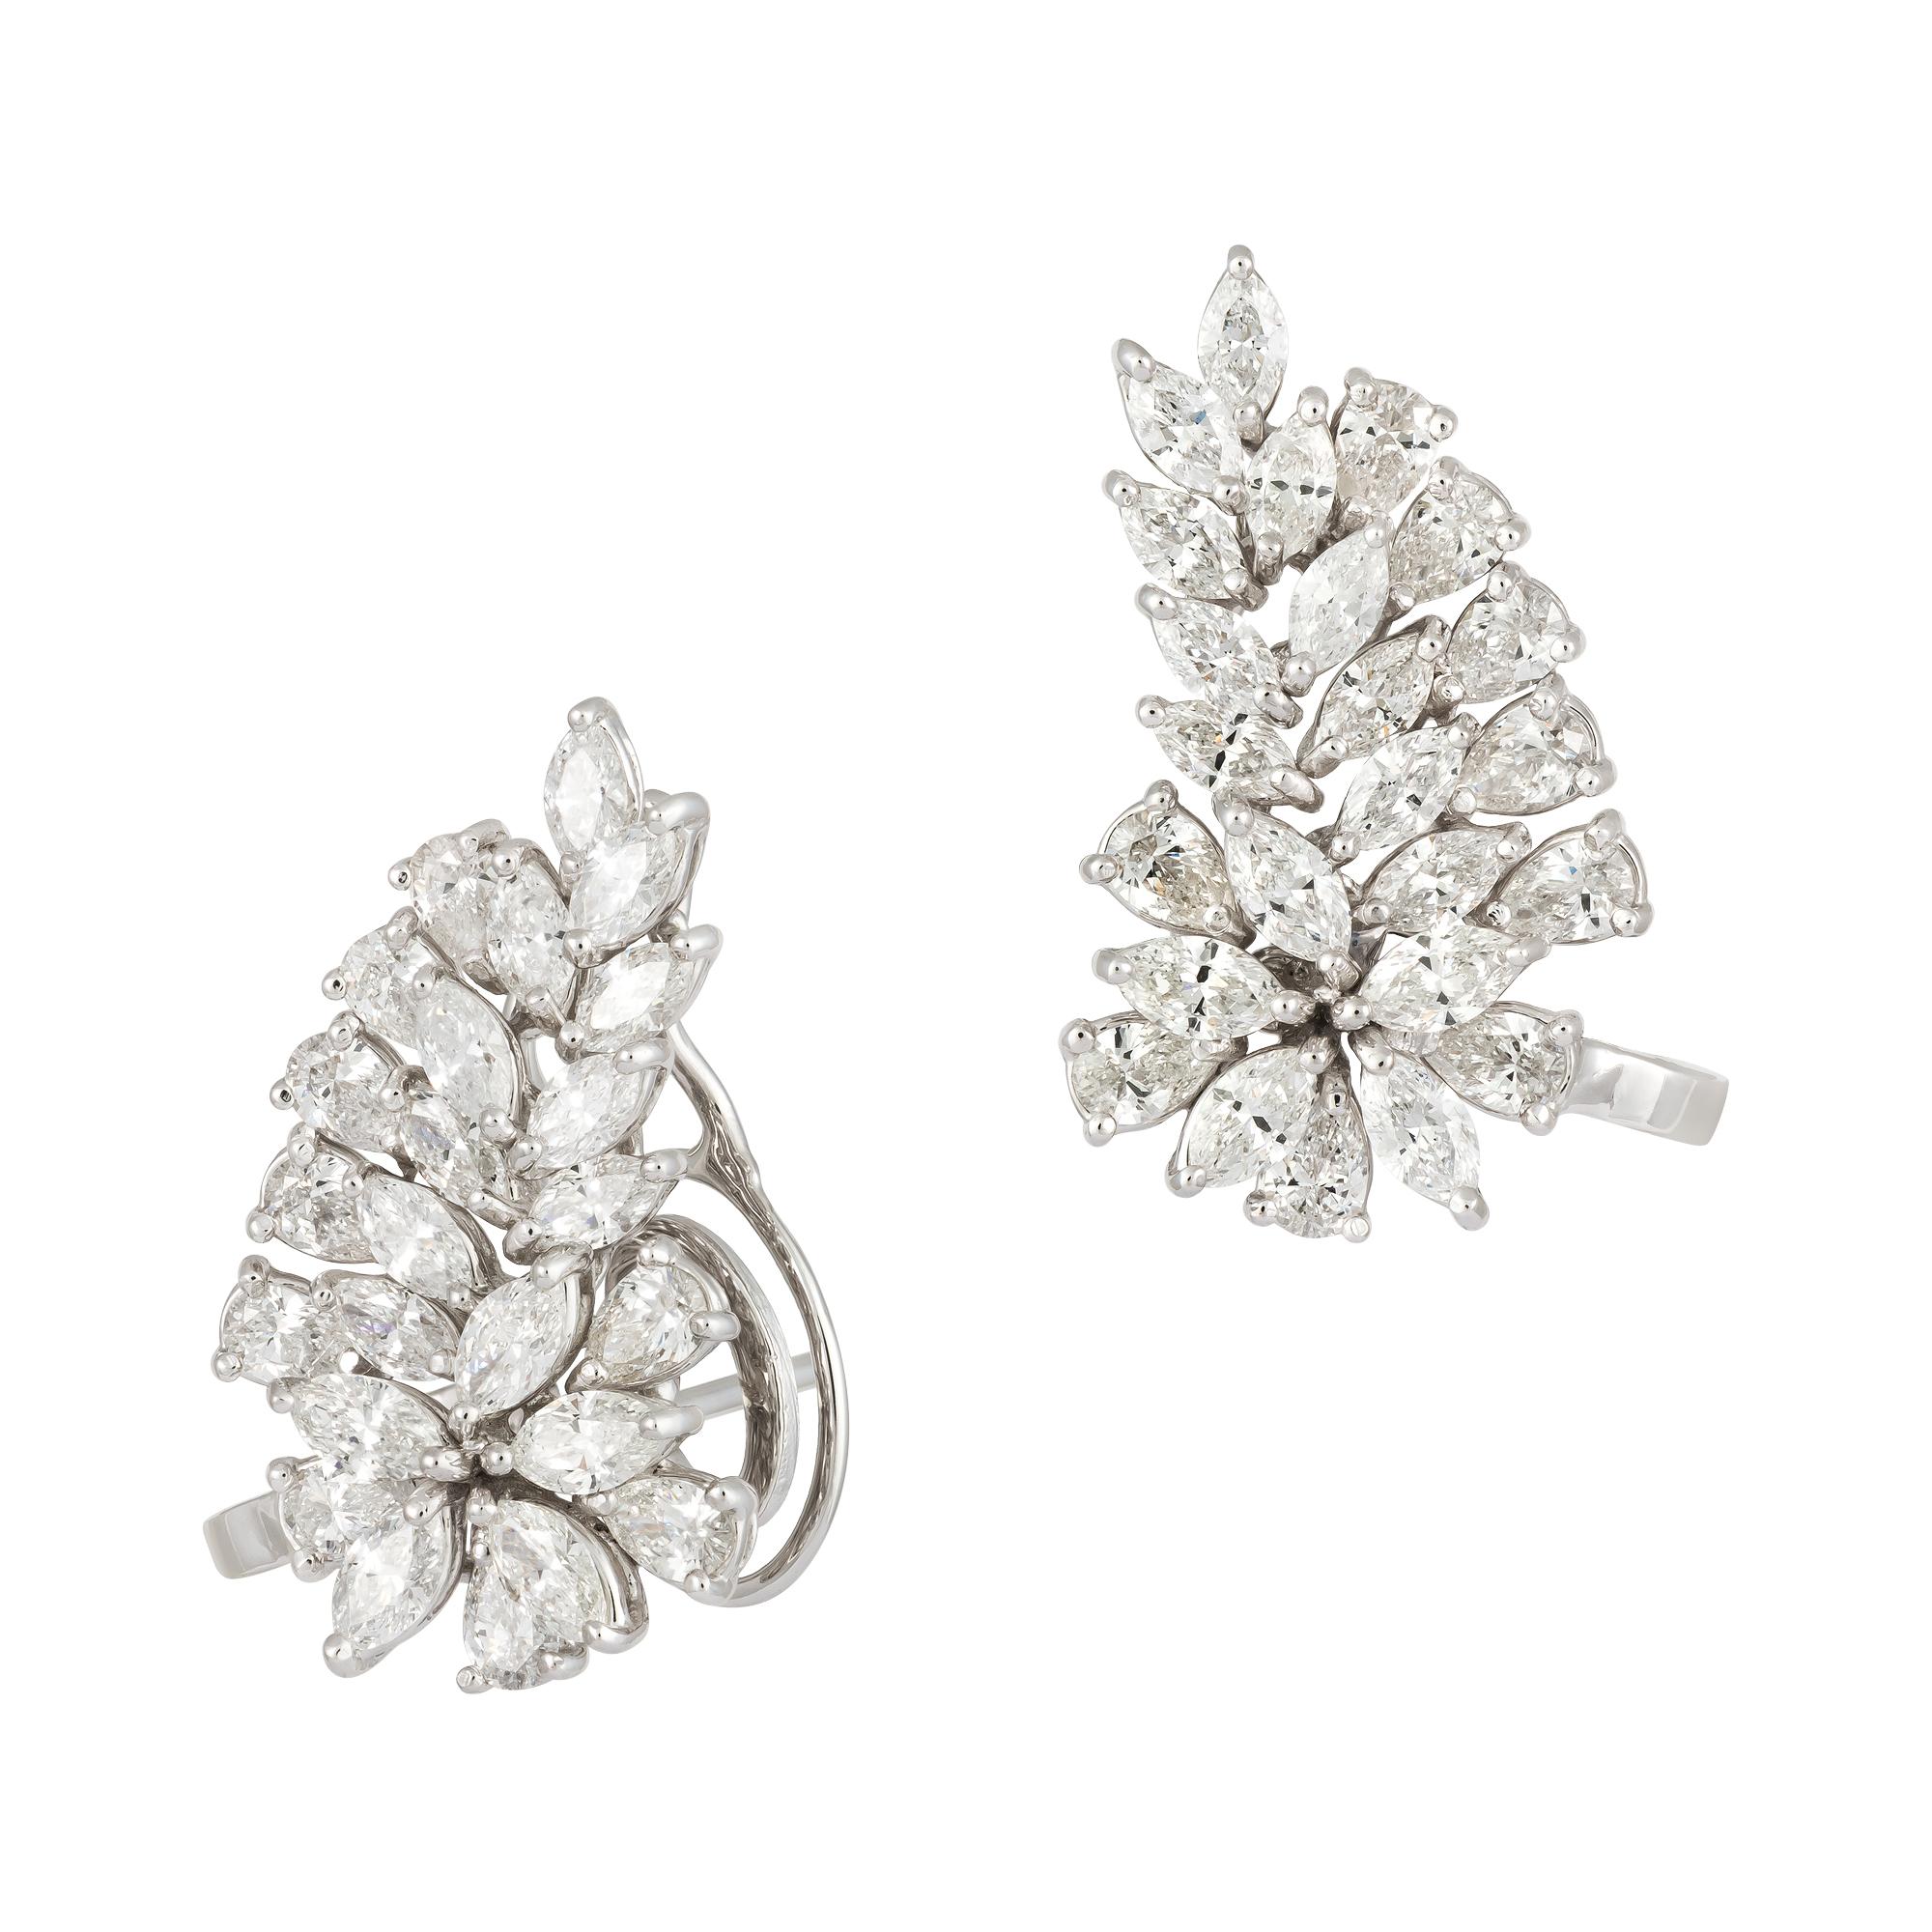 Modern Breathtaking Studs White Gold 18K Earrings Diamond For Her For Sale